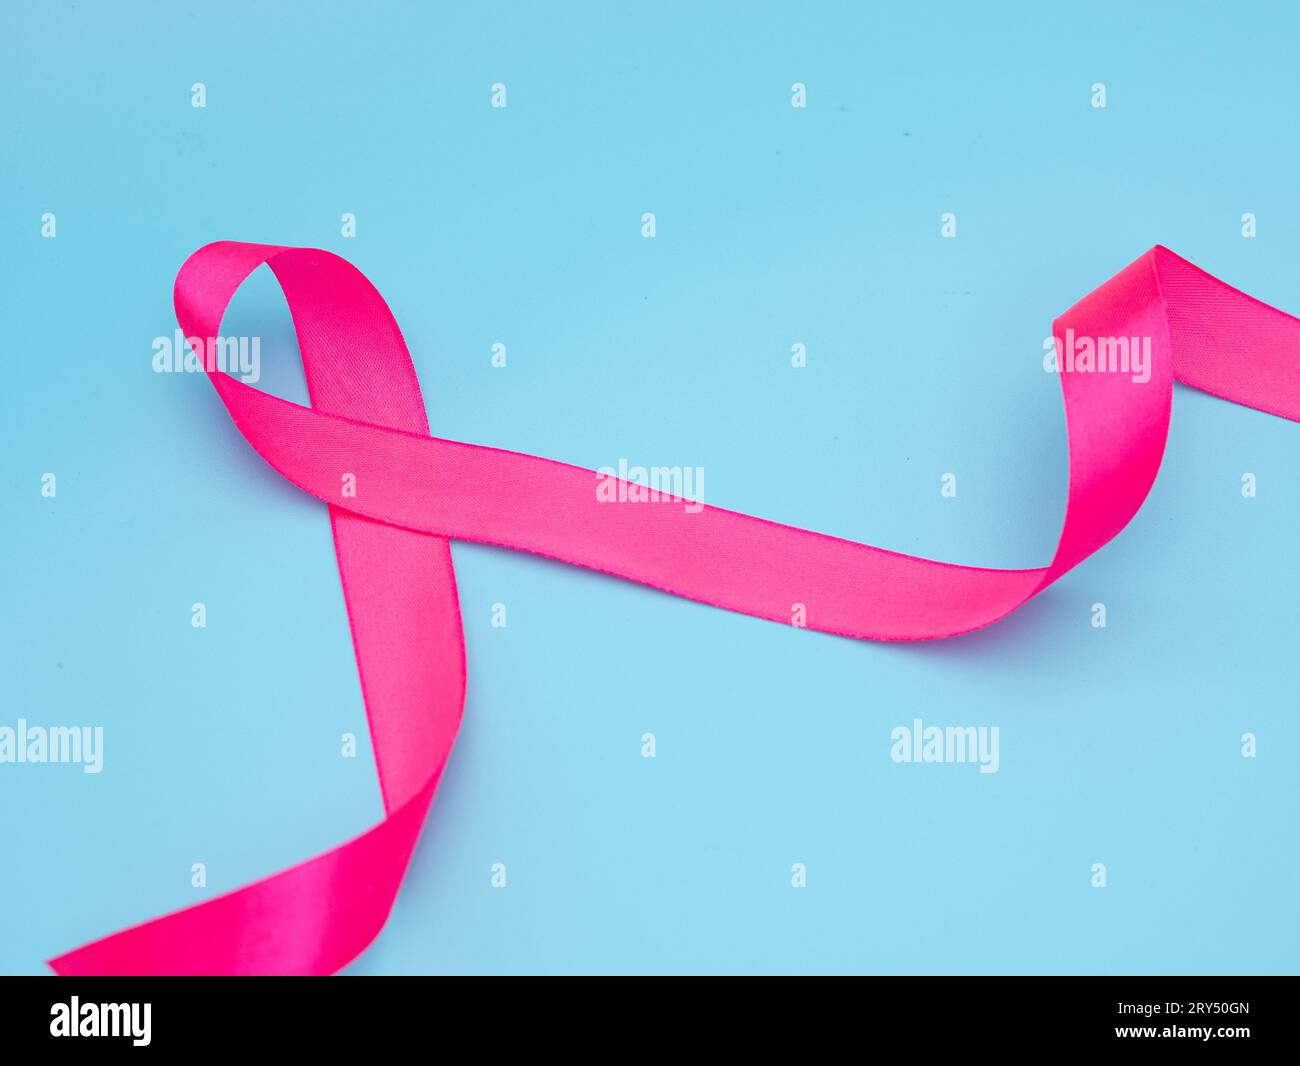 blaues Awareness-Band auf blauem Hintergrund. Konzept zur Unterstützung bei der Bekämpfung des Zervixkarzinoms. Stockfoto